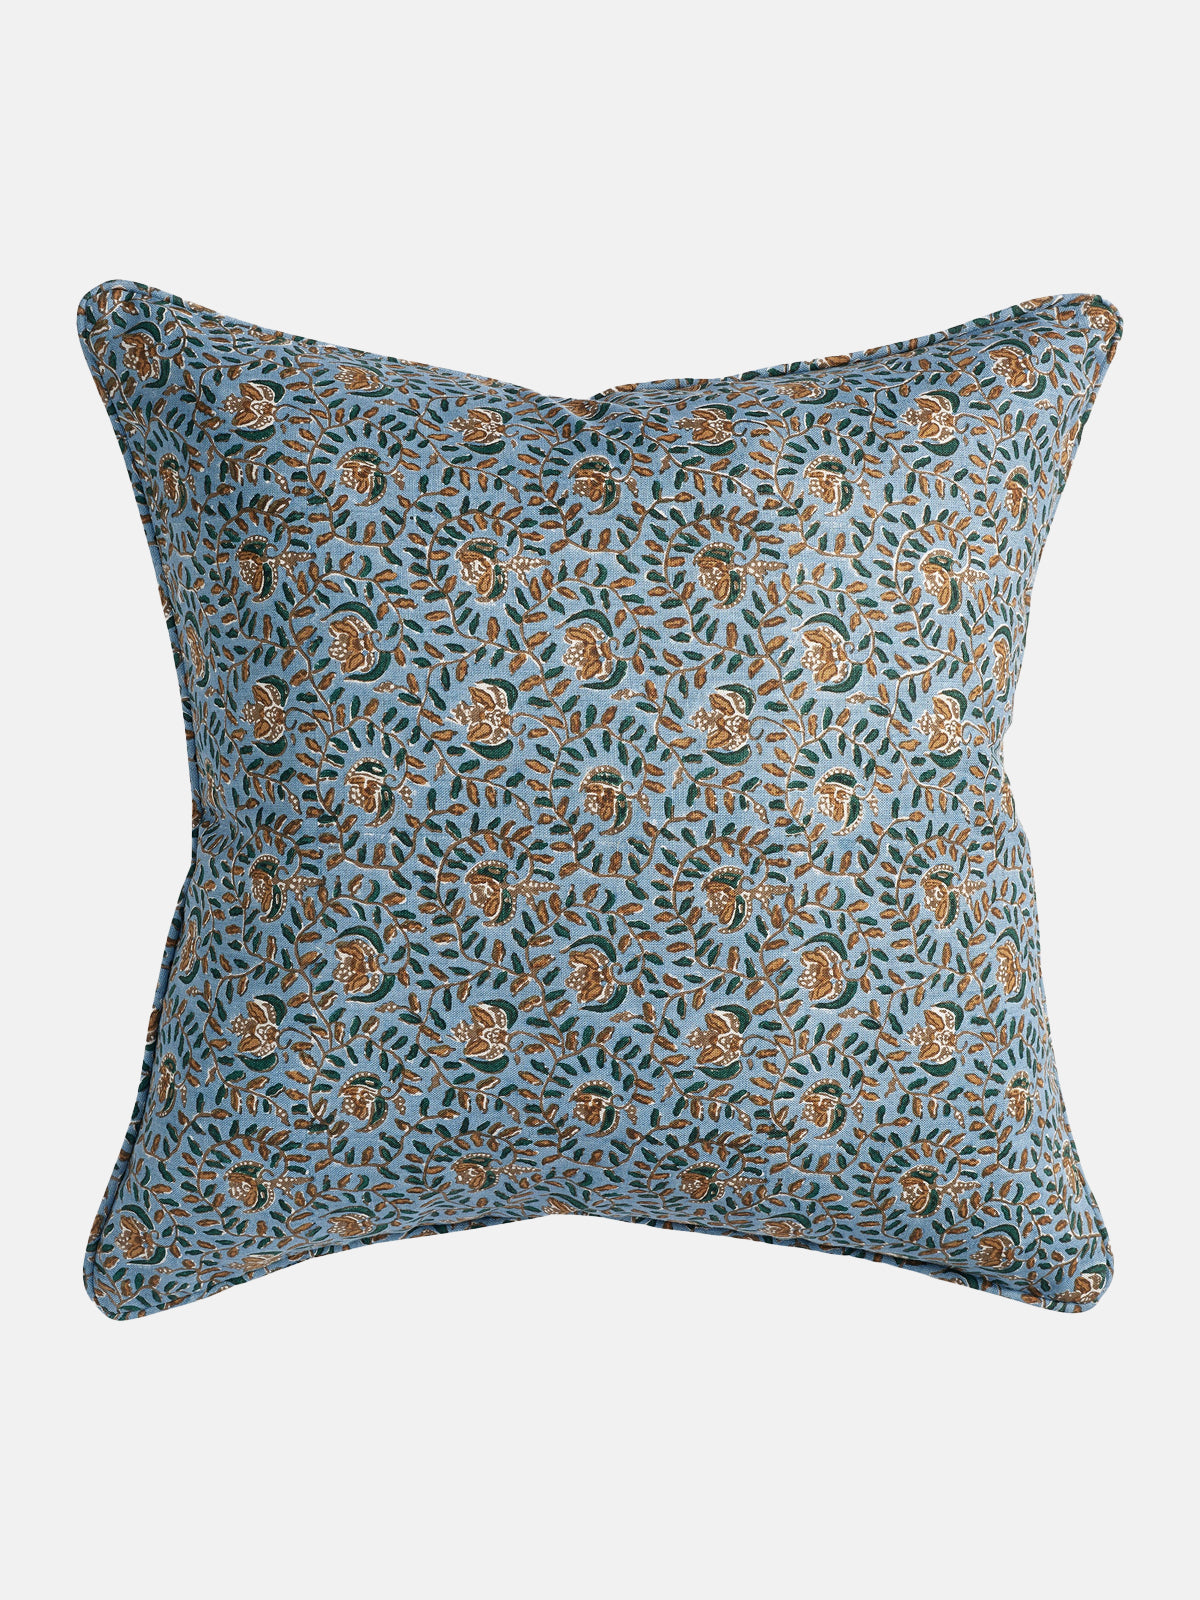 Ubud Byzantine Pillow